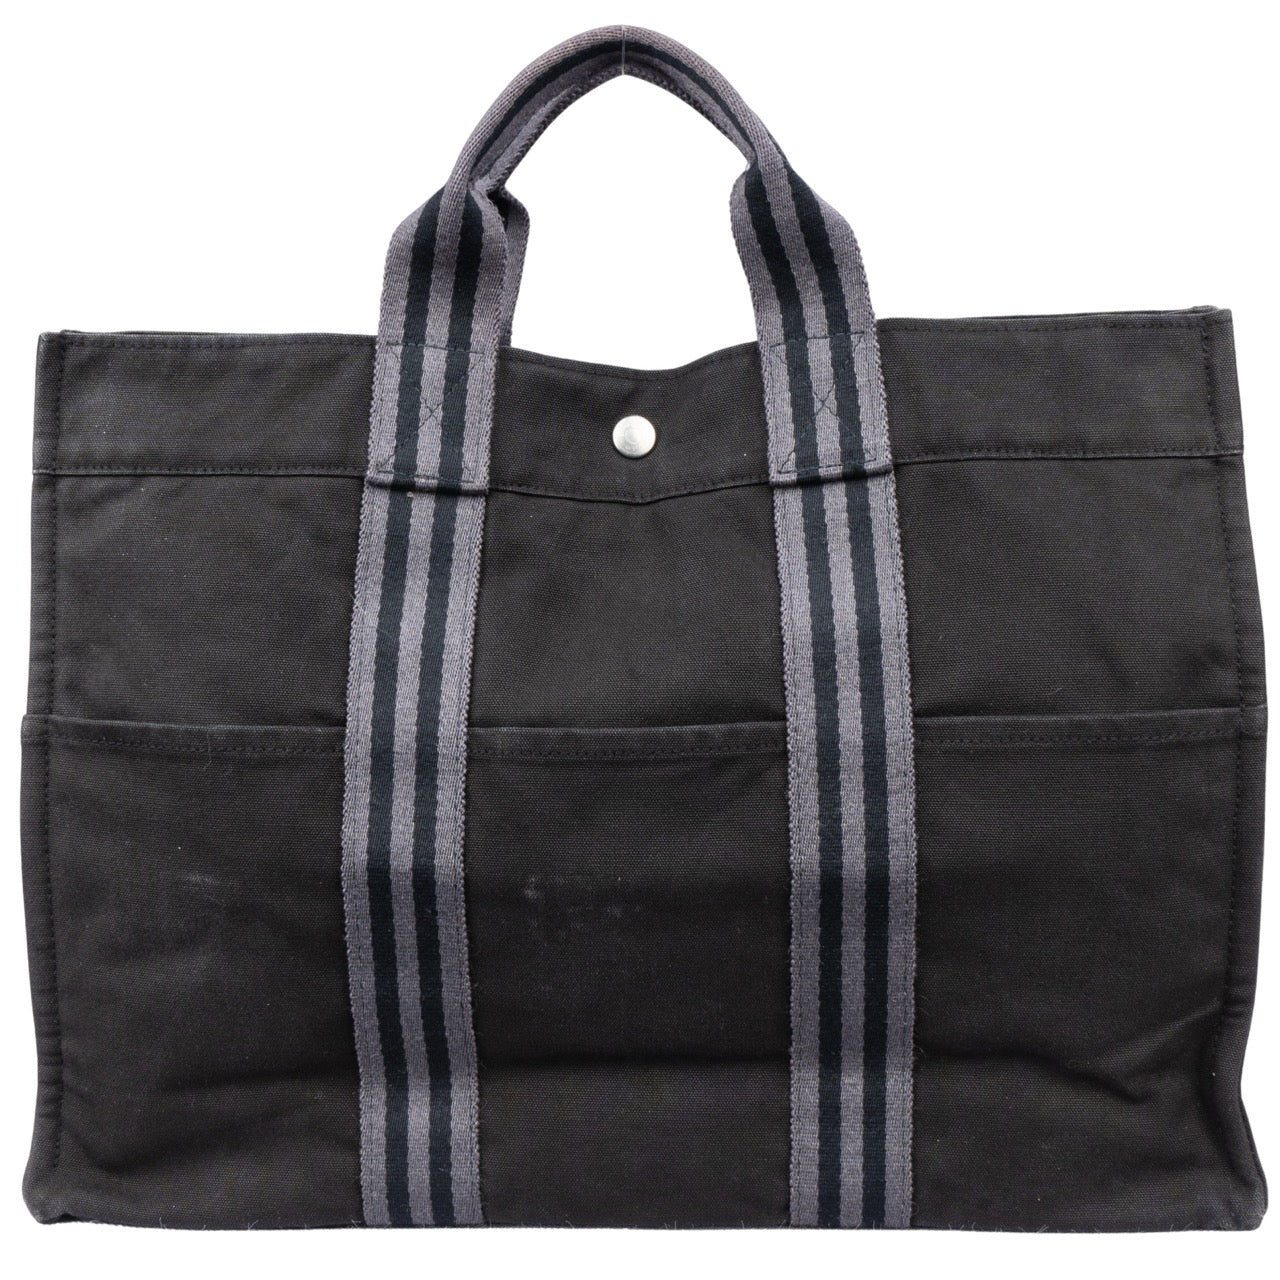 Hermes Cotton Fourre Contrast Handbag